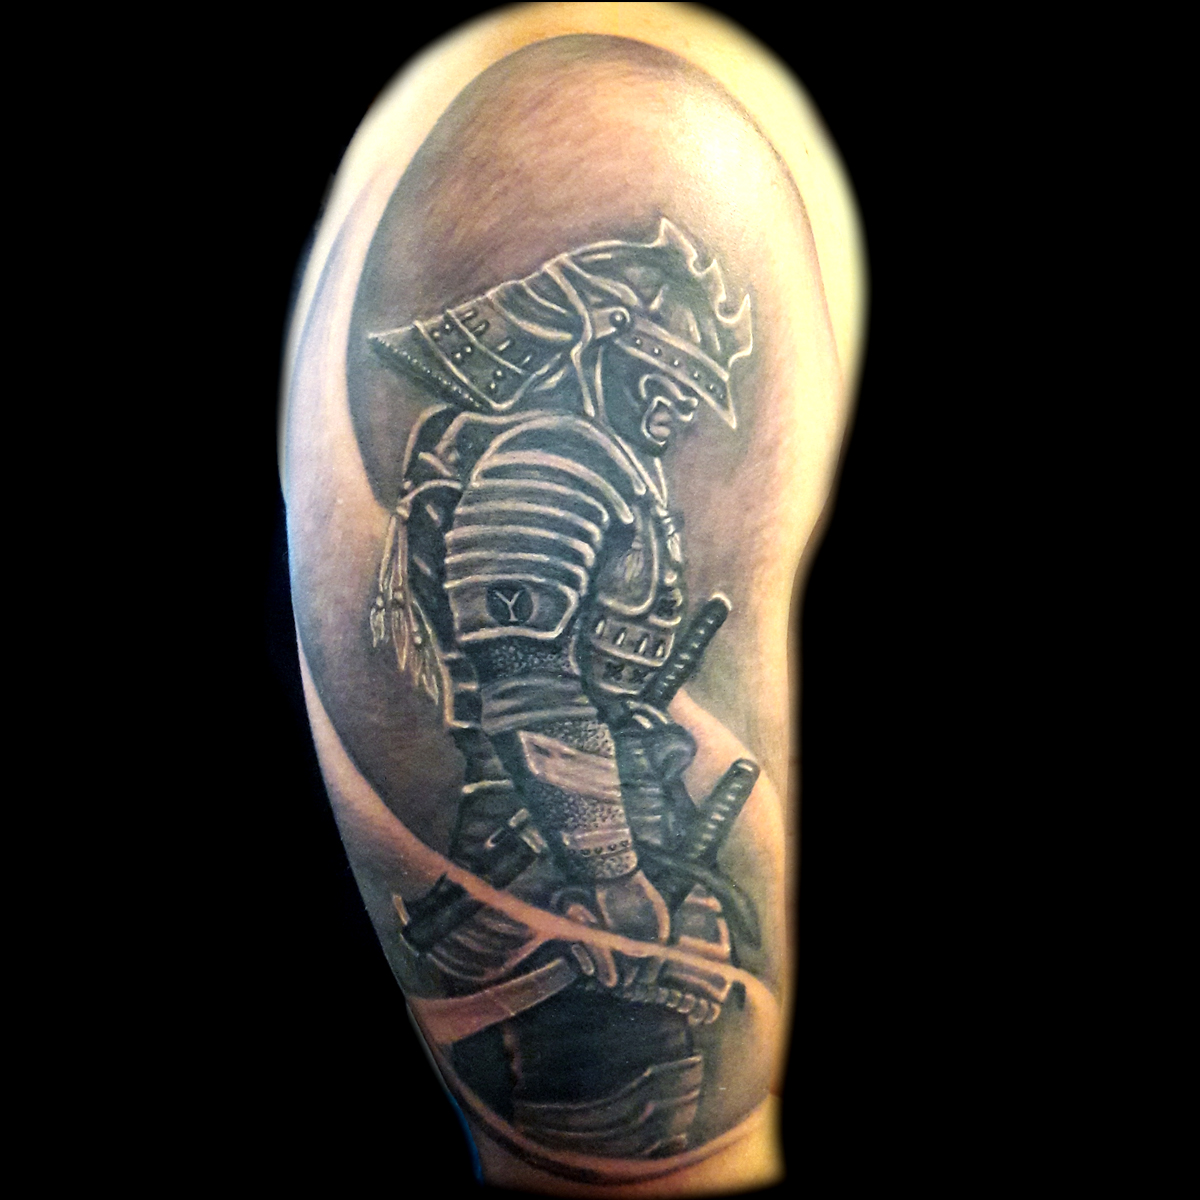 Skin Machine Tattoo Studio - Warrior theme tattoo by @_.fitoor._  @skinmachinetattoo . #warriortattoo #wingstattoo #inkedmen #artist  #skinmachinetattoo #spartatattoo | Facebook